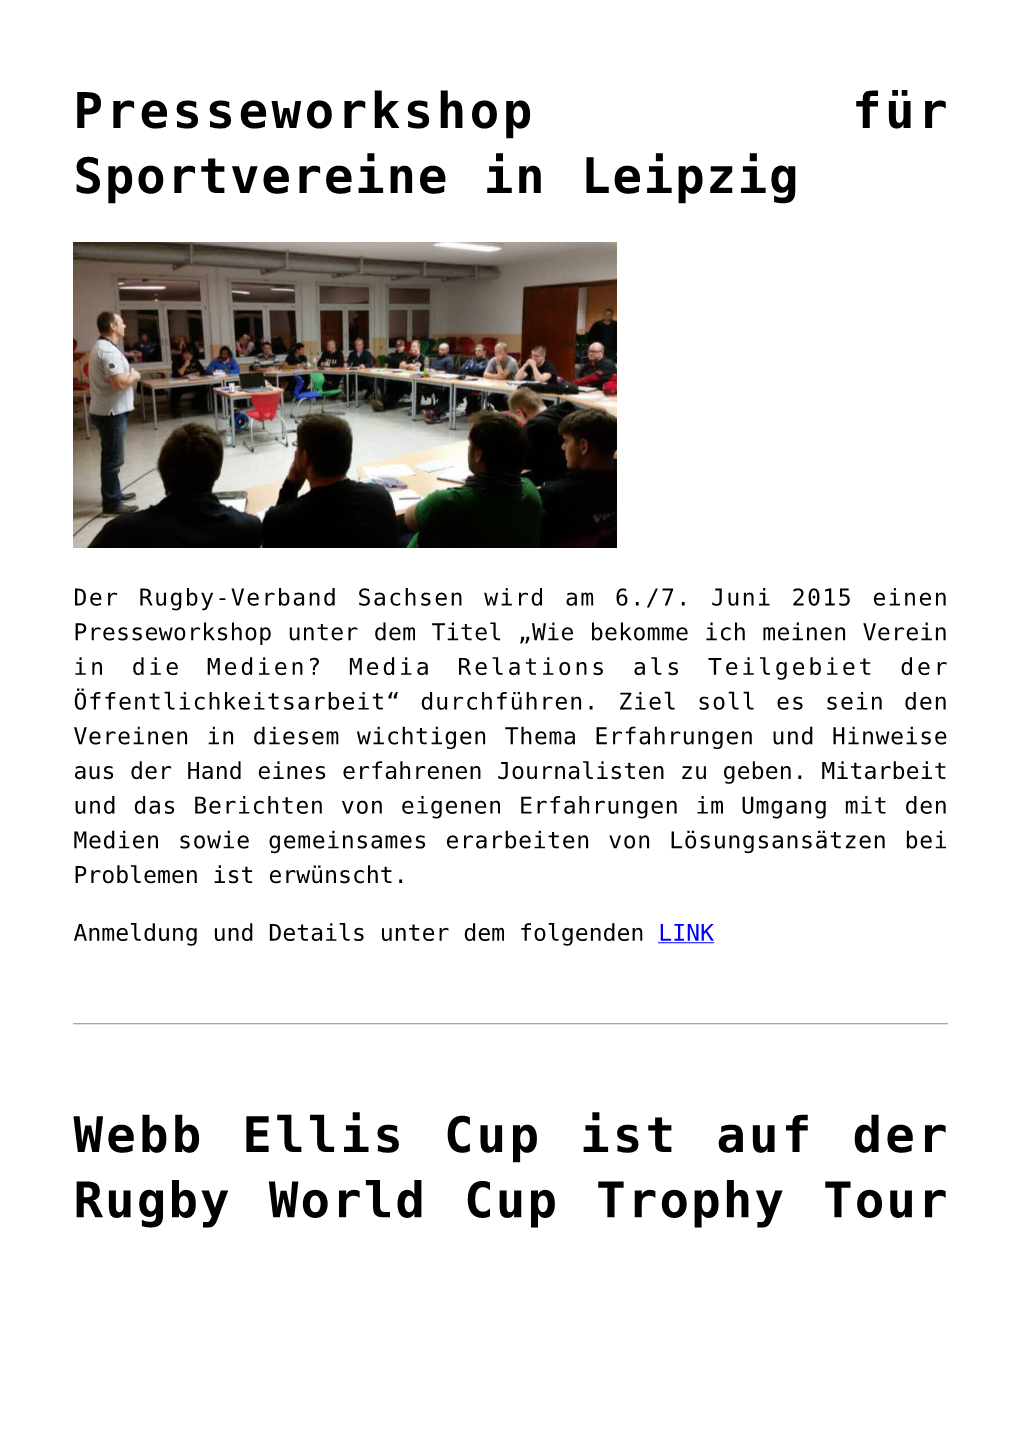 Presseworkshop Für Sportvereine in Leipzig,Webb Ellis Cup Ist Auf Der